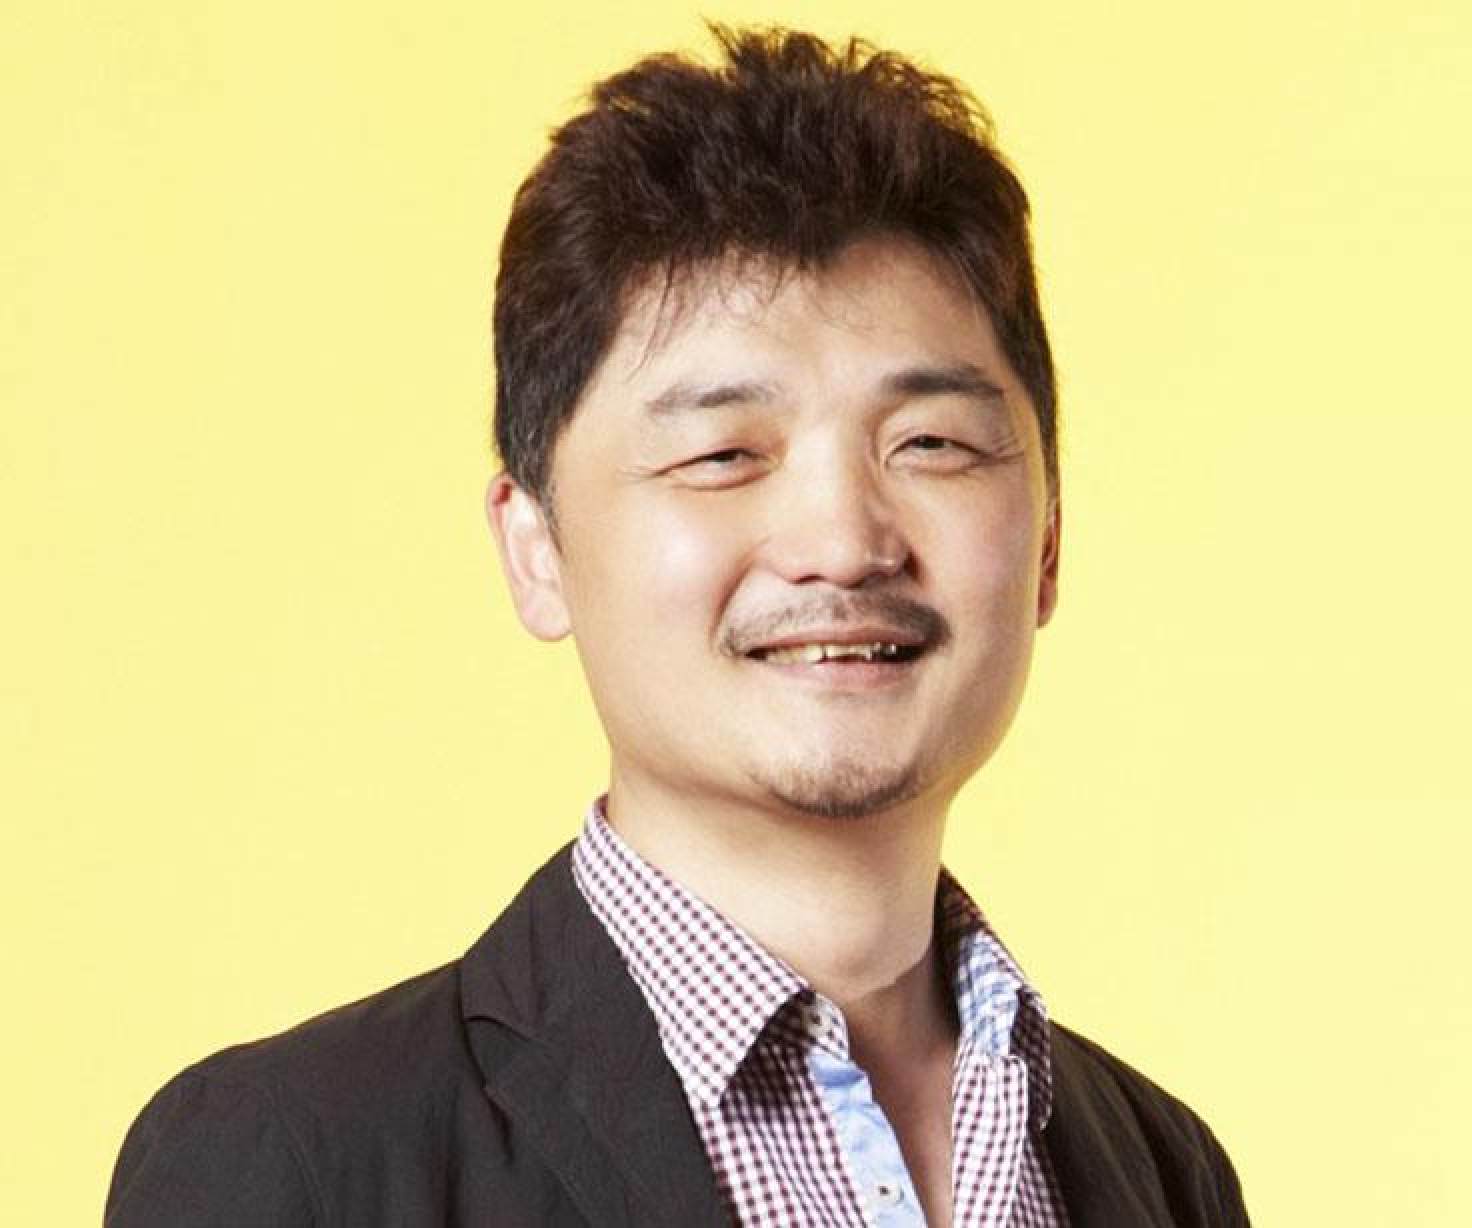 Chân dung tỷ phú từng giàu nhất Hàn Quốc: Lớn lên ở khu ổ chuột, bắt đầu từ vị trí nhân viên "quèn" của Samsung